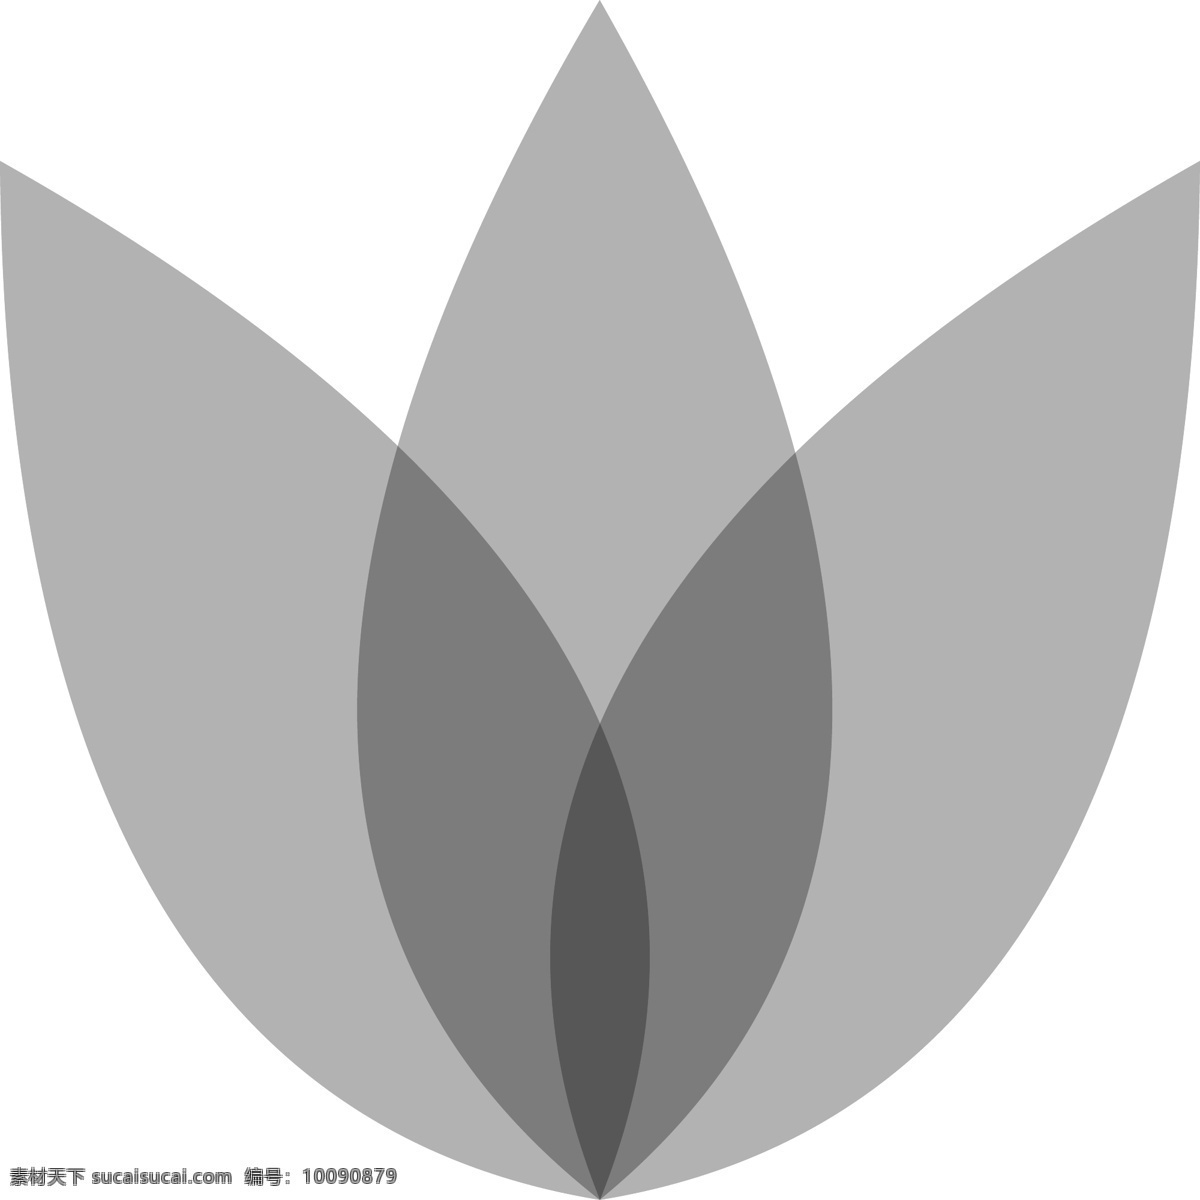 灰色 卡通 莲花 符号 图标 创意图标 网站图标 icon 免扣图 莲花符号 名片 通用图标 办公室植物